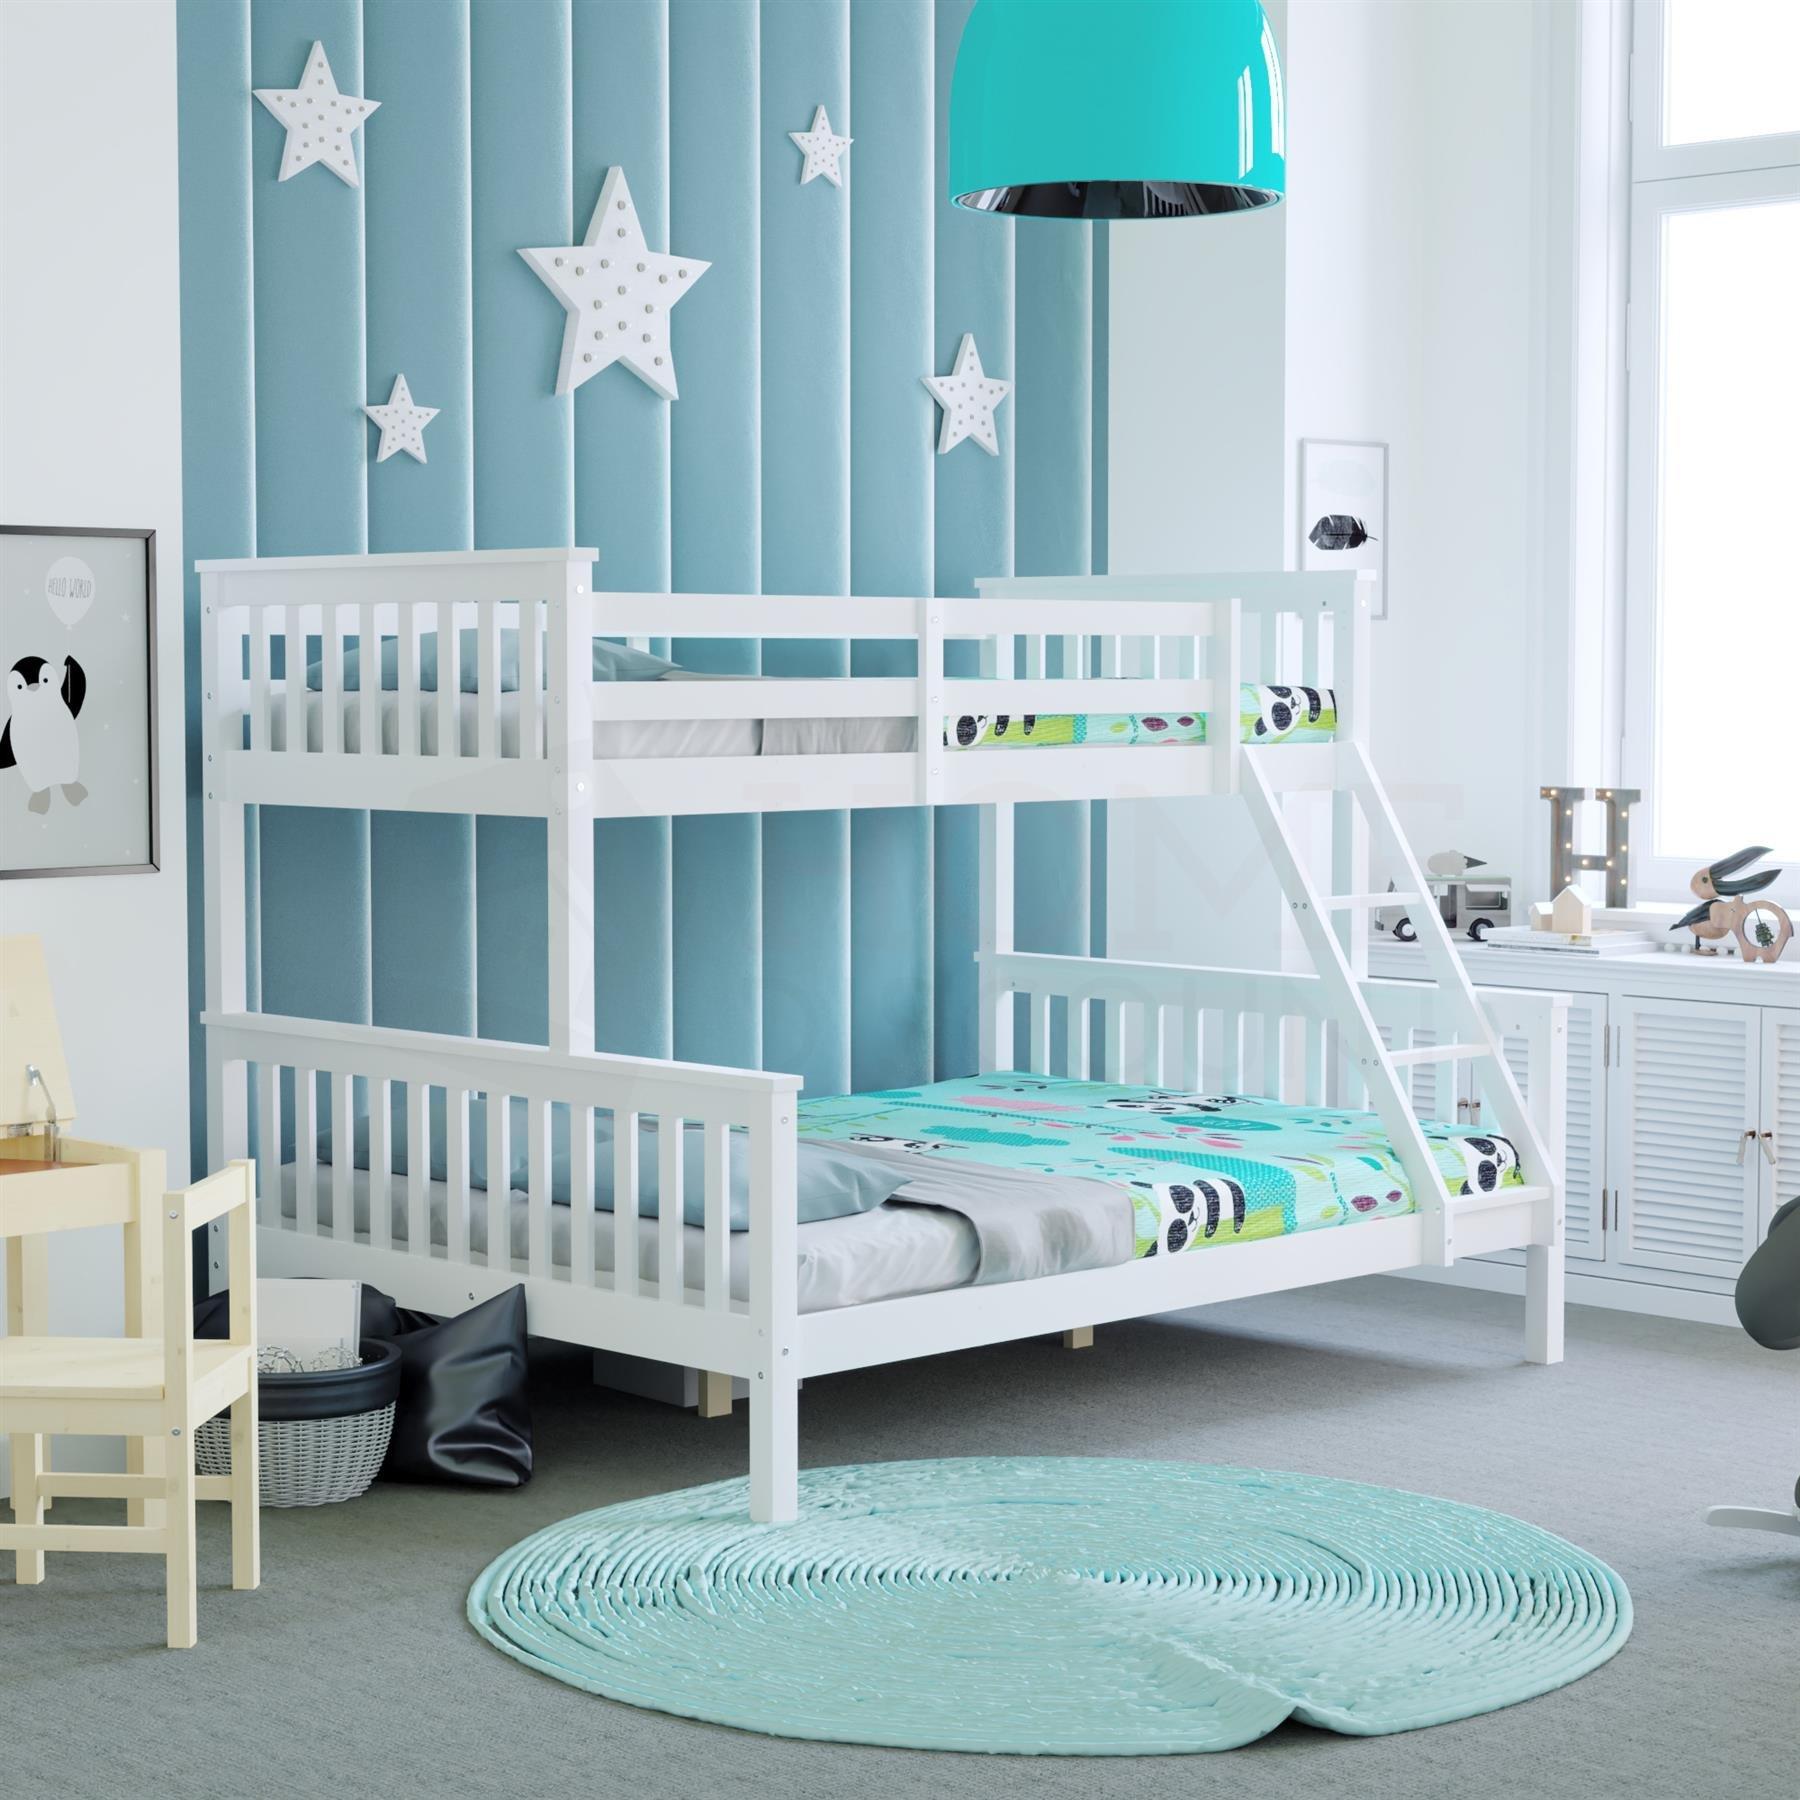 Vida Designs Milan Triple Sleeper Bunk Bed Frame Bedroom Furniture